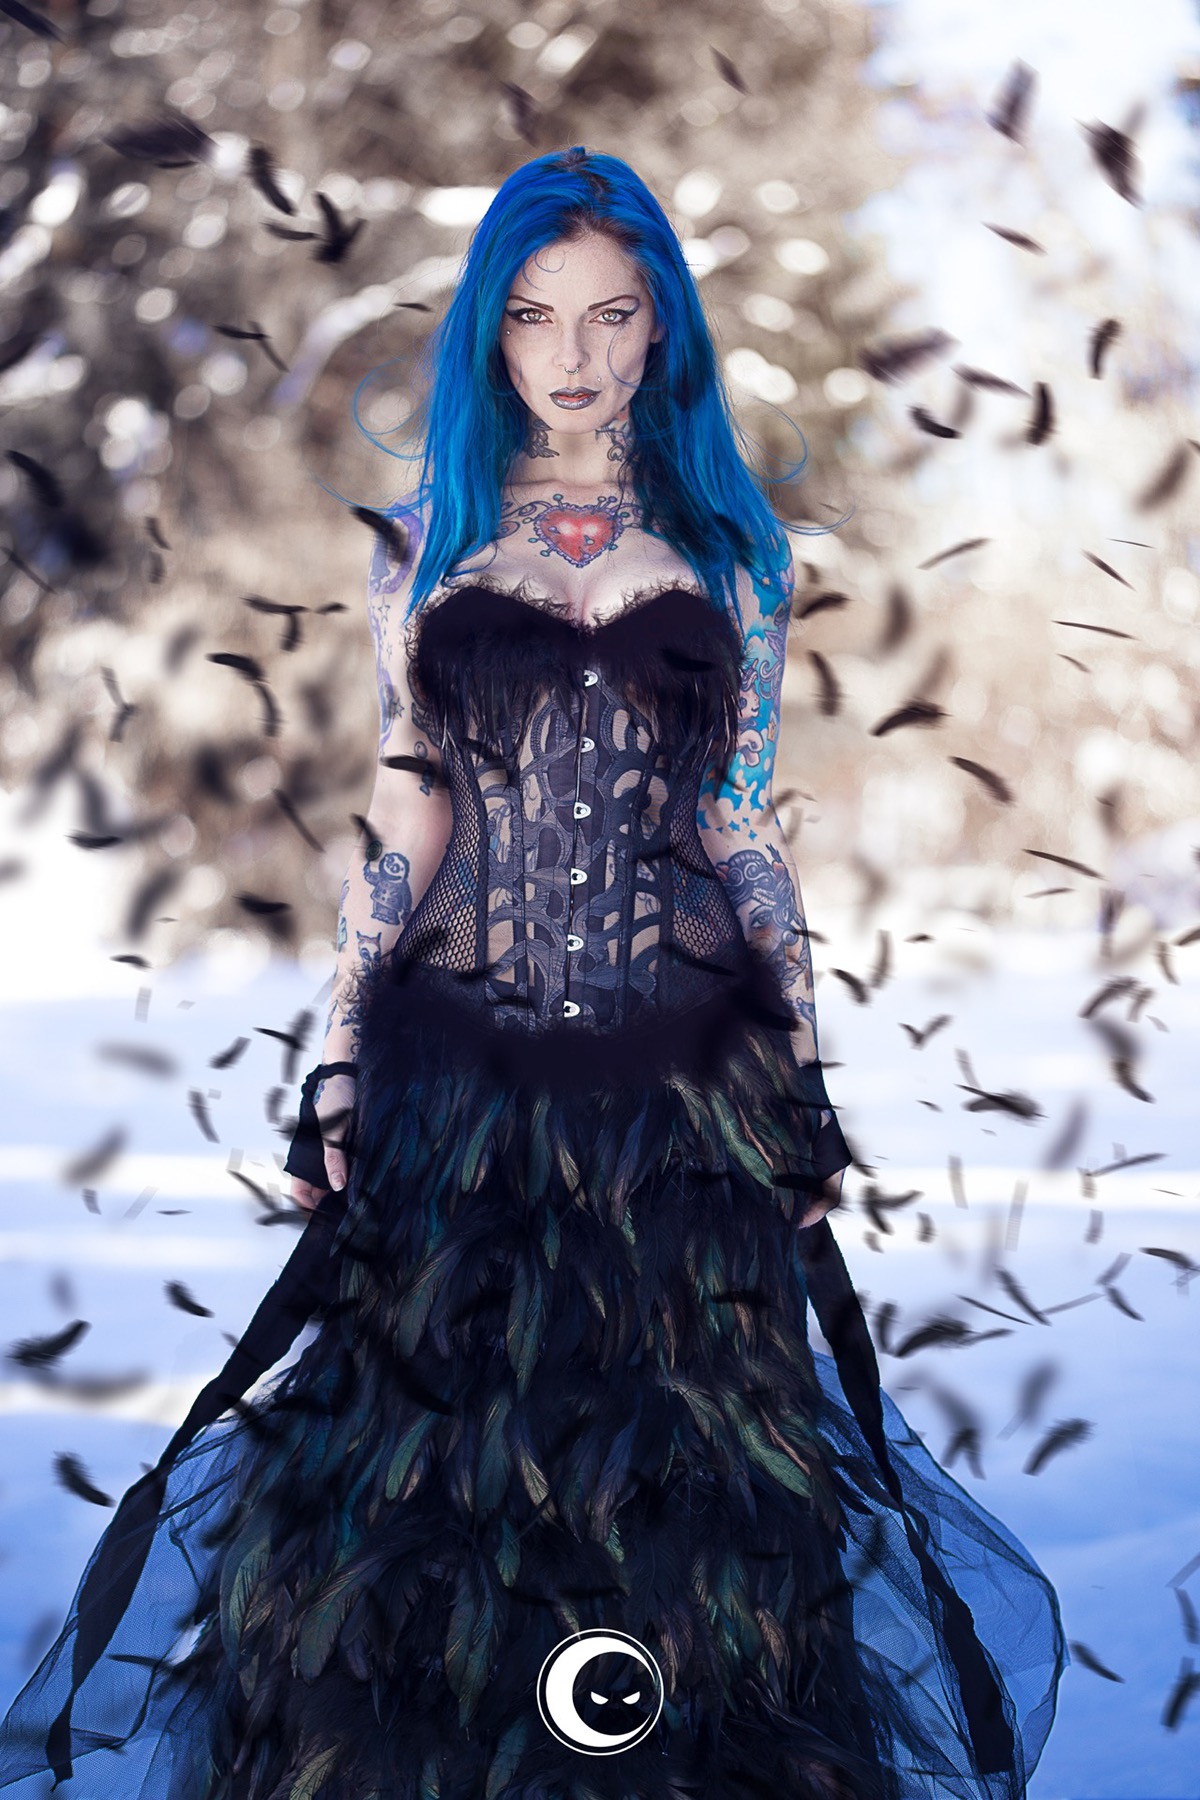 riae suicide blu blackbird witch inblack cesare longhi